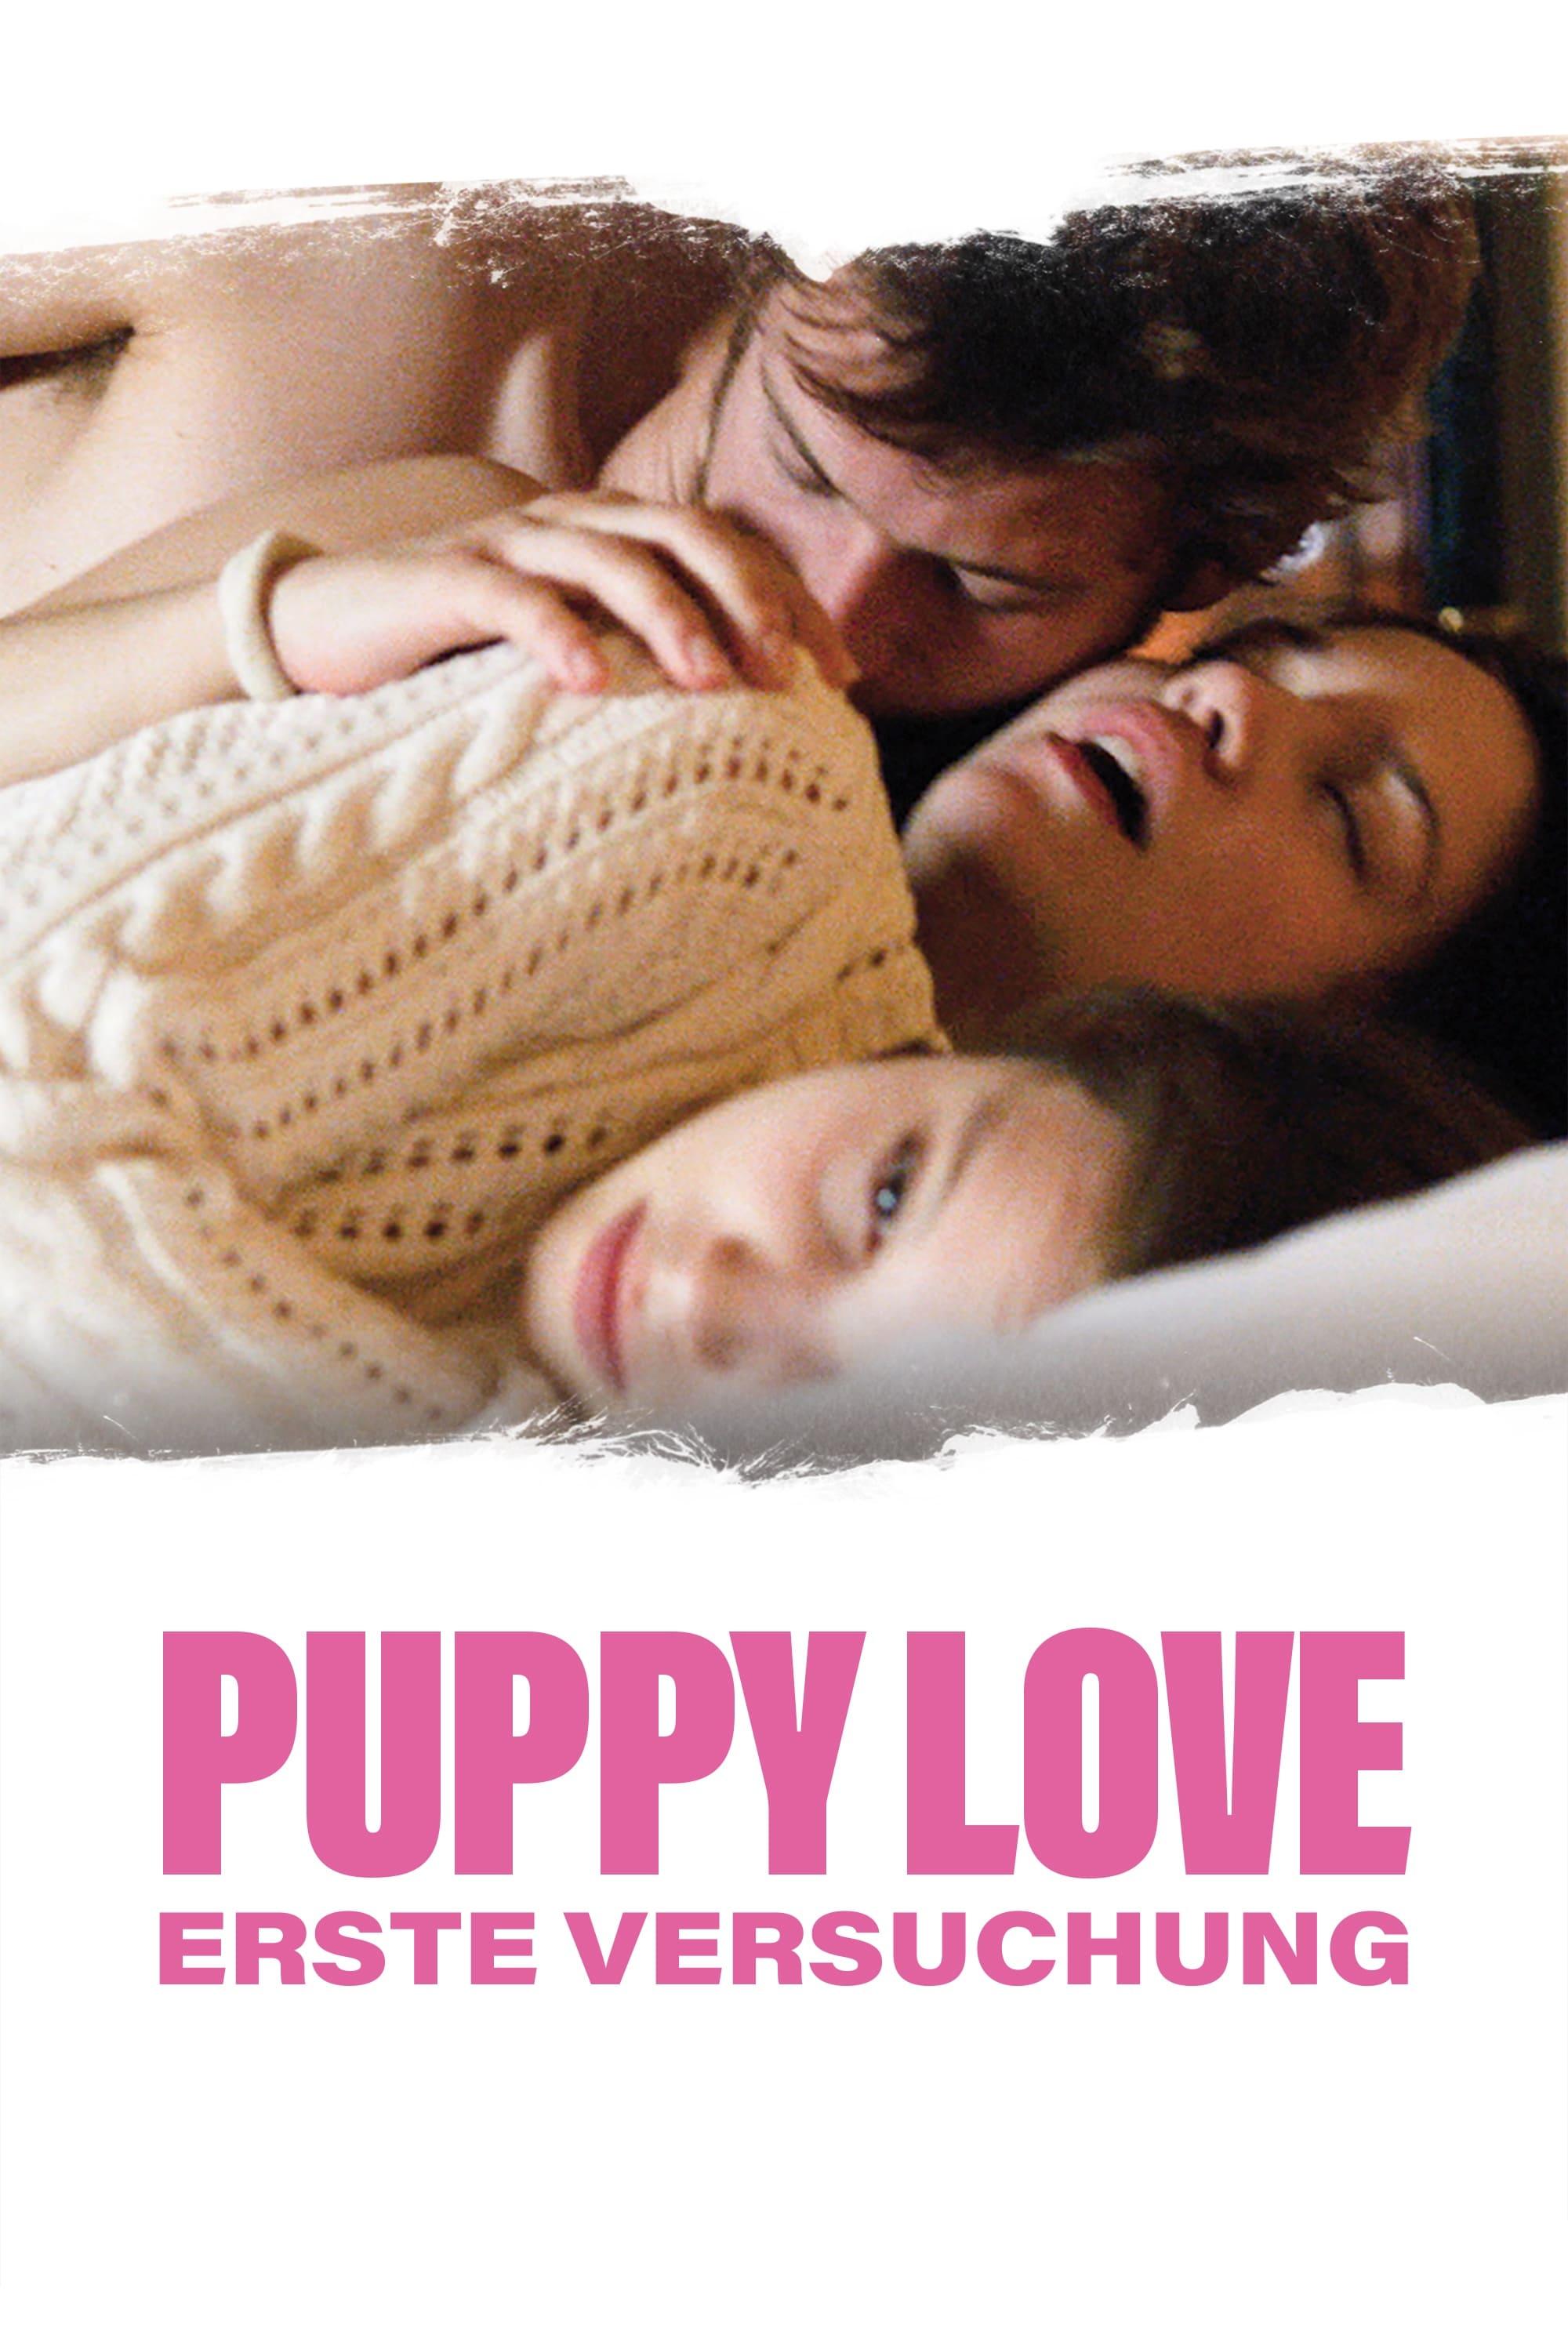 Puppylove – Erste Versuchung poster